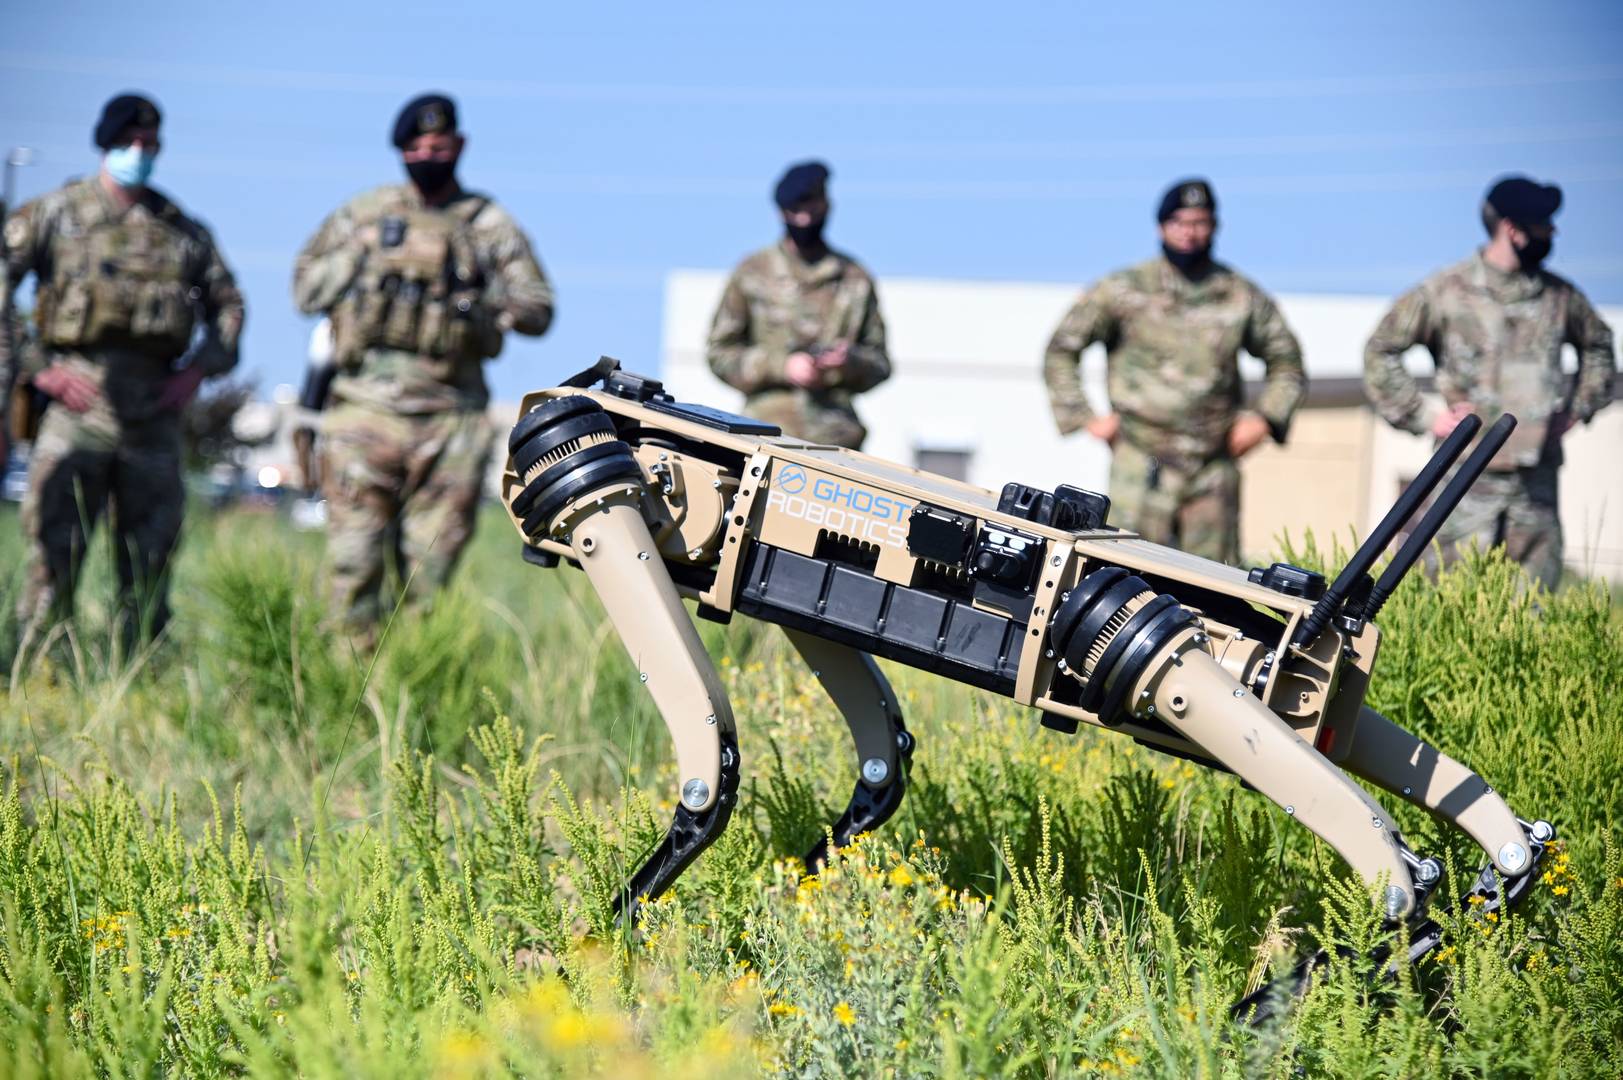 Демонстрация возможностей собаки-робота Q-UGV на базе ВВС США Хилл, штат Юта